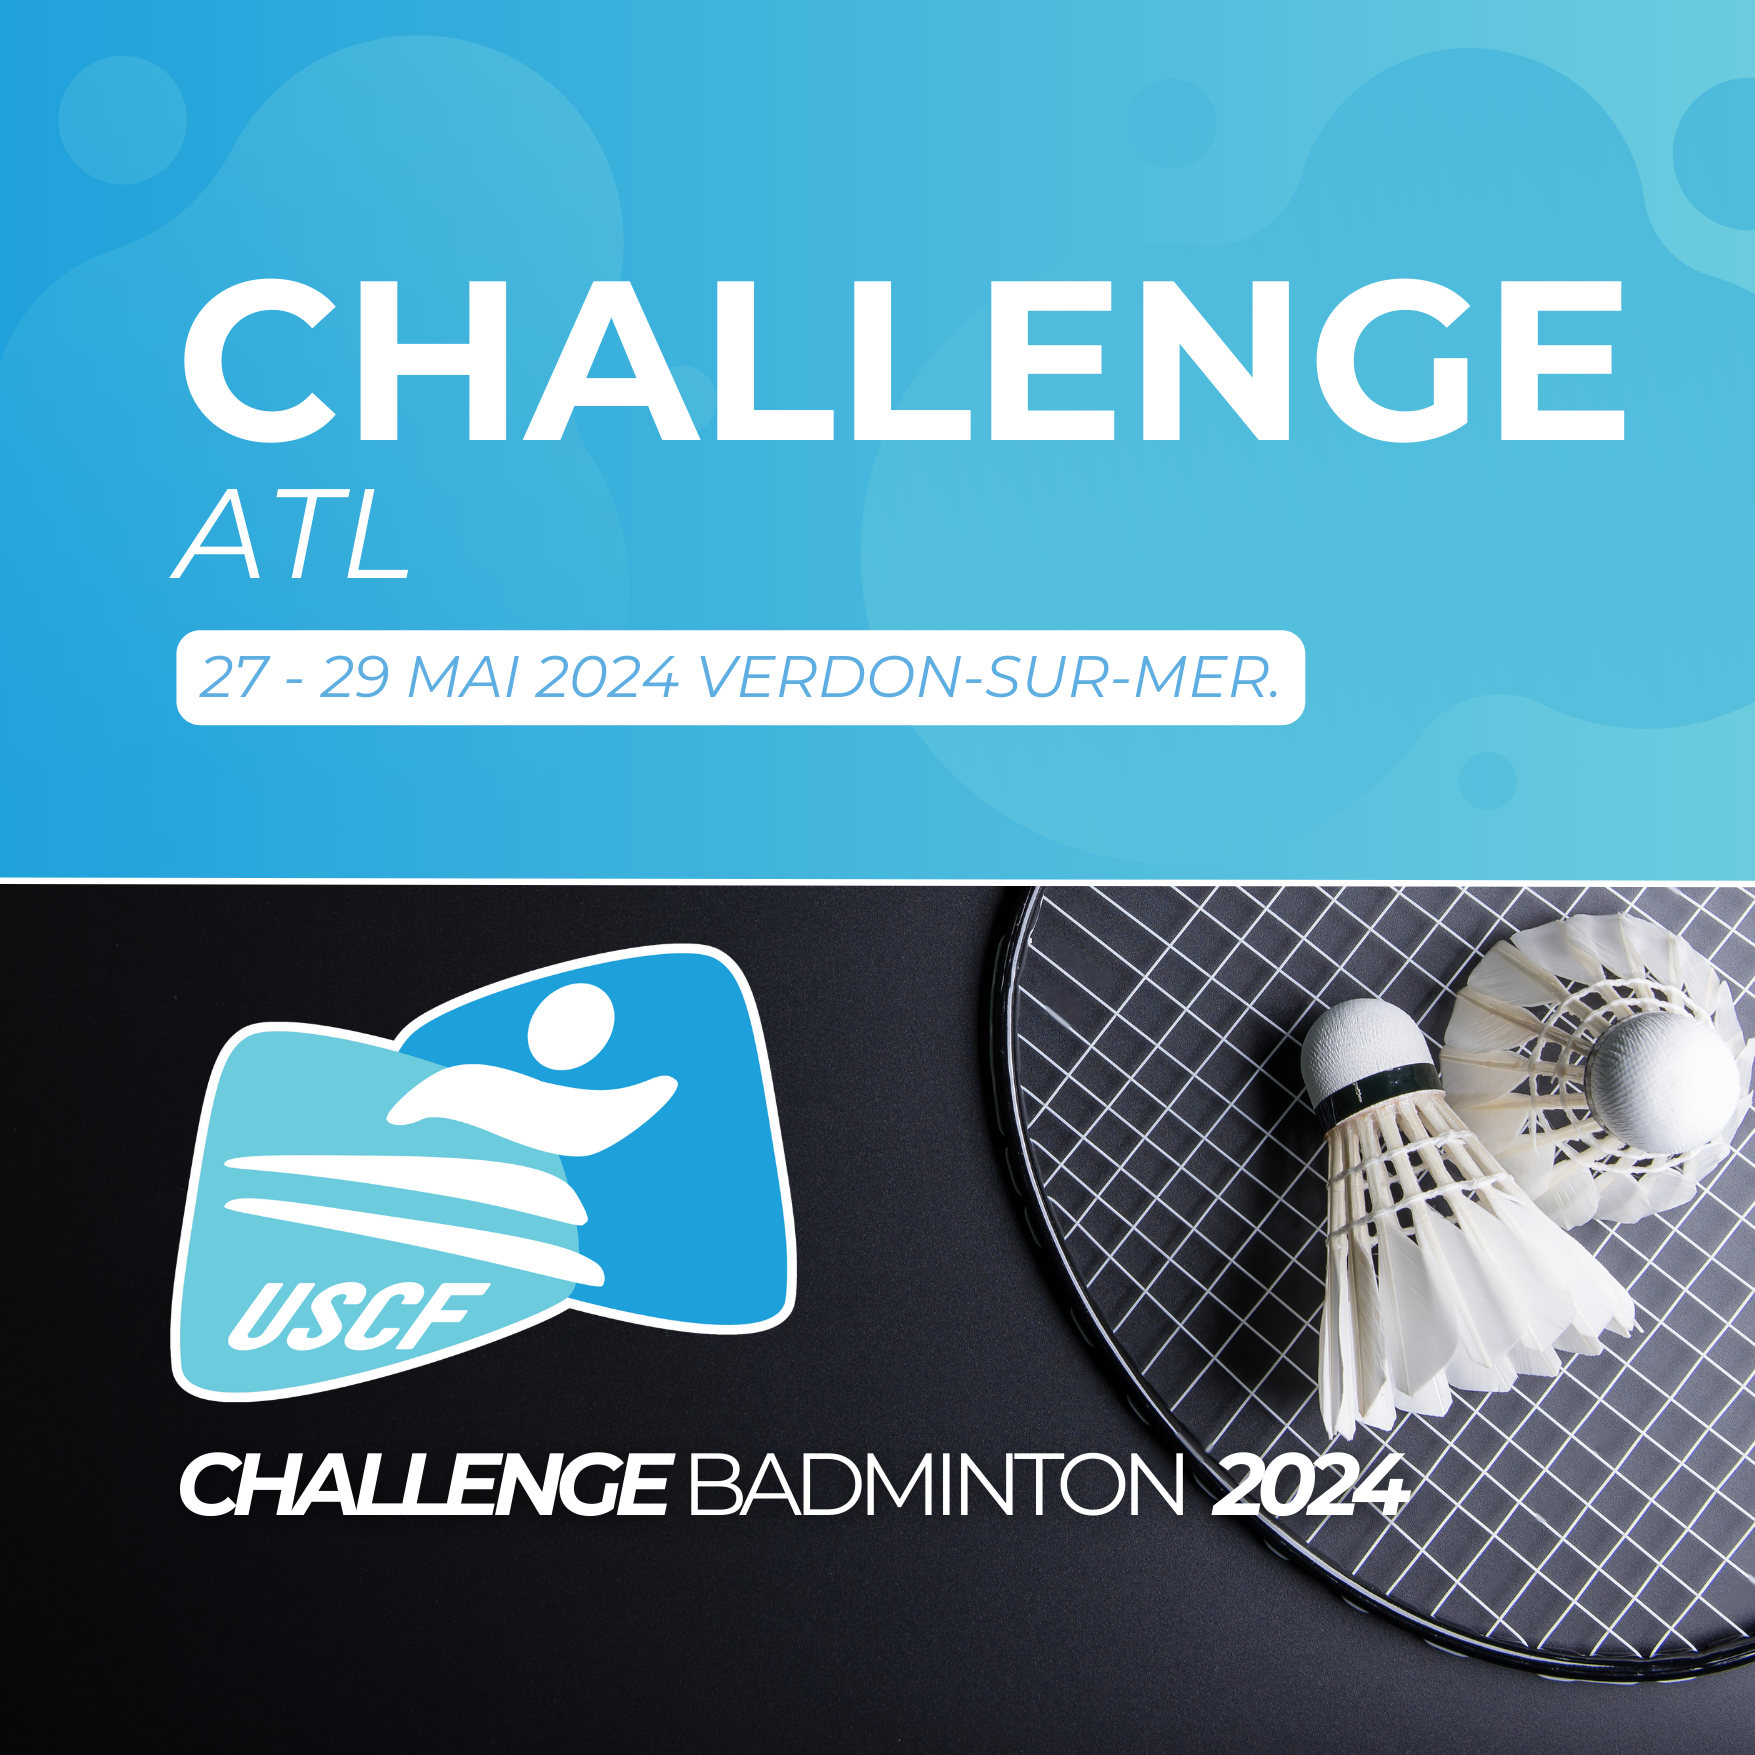 Le challenge de badminton du Comité ATL au Verdon-sur-Mer